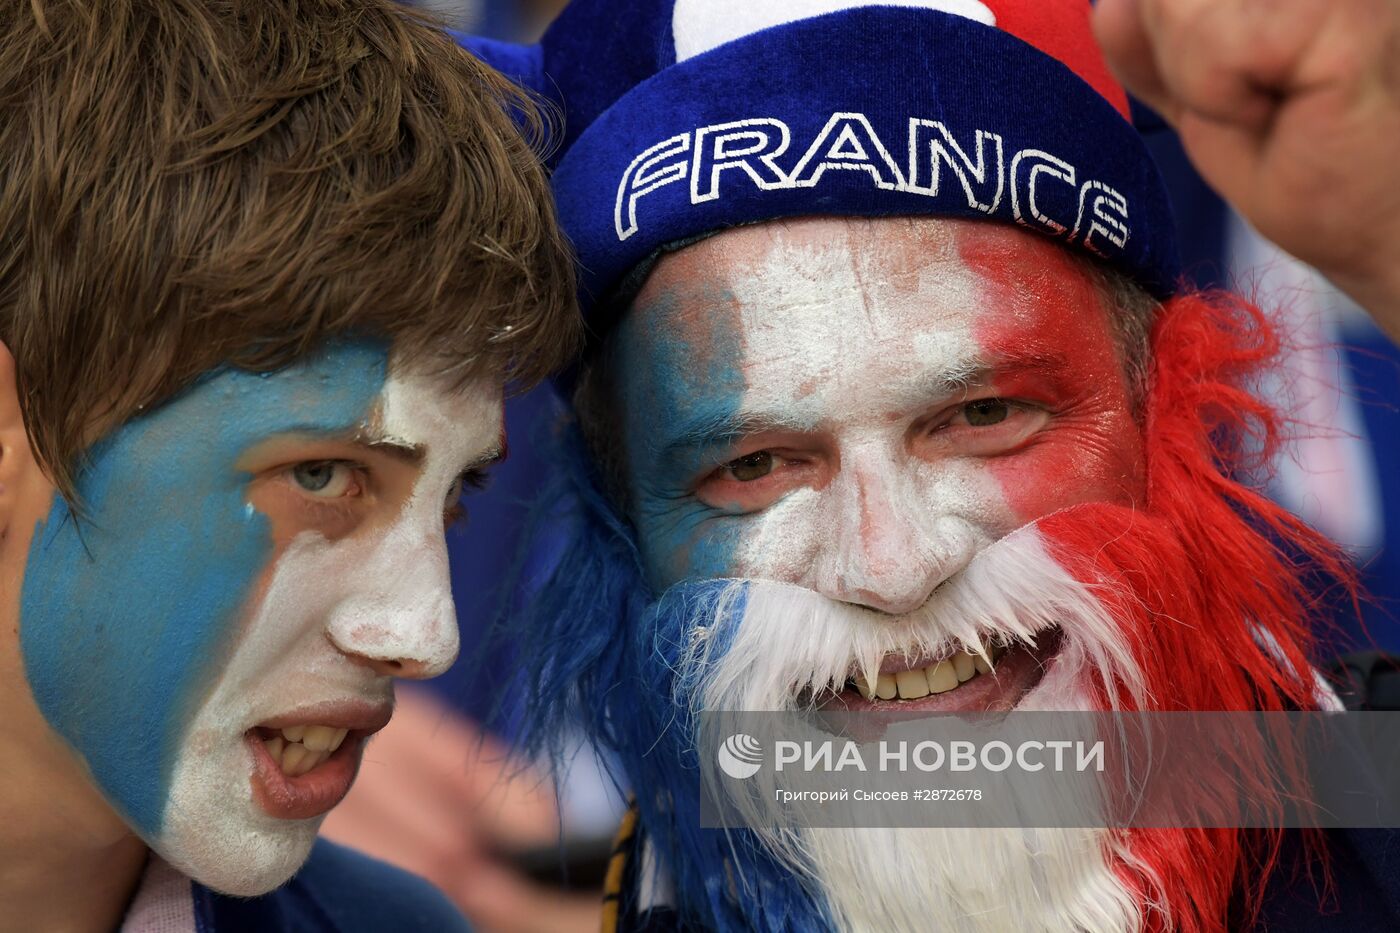 Футбол. Чемпионат Европы - 2016. Матч Франция - Албания